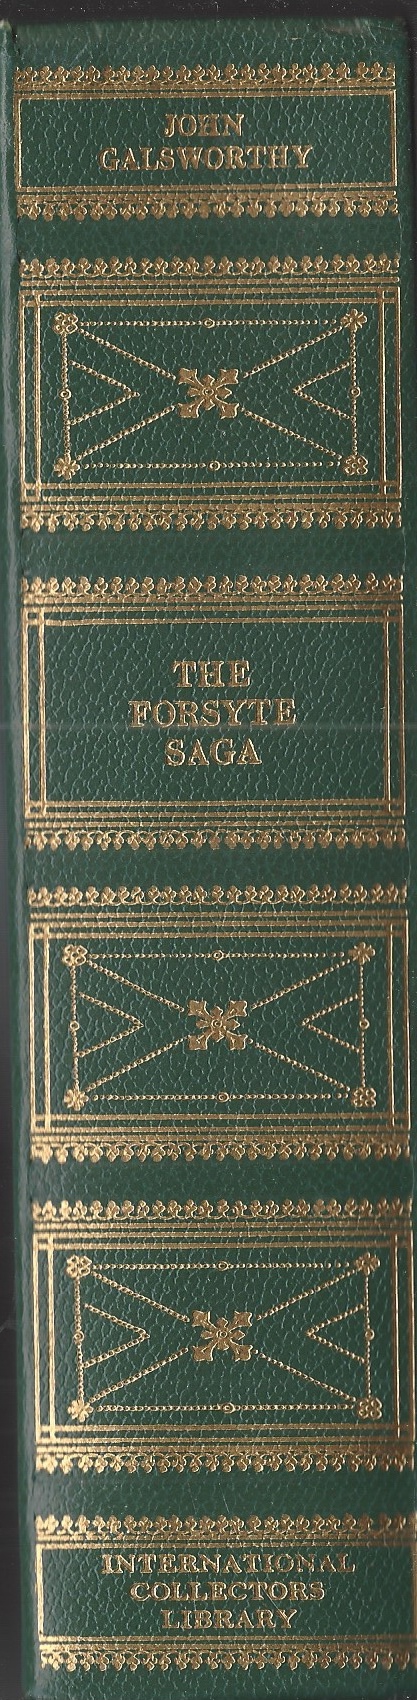 GALSWORTHY JOHN - Forsyte Saga, the